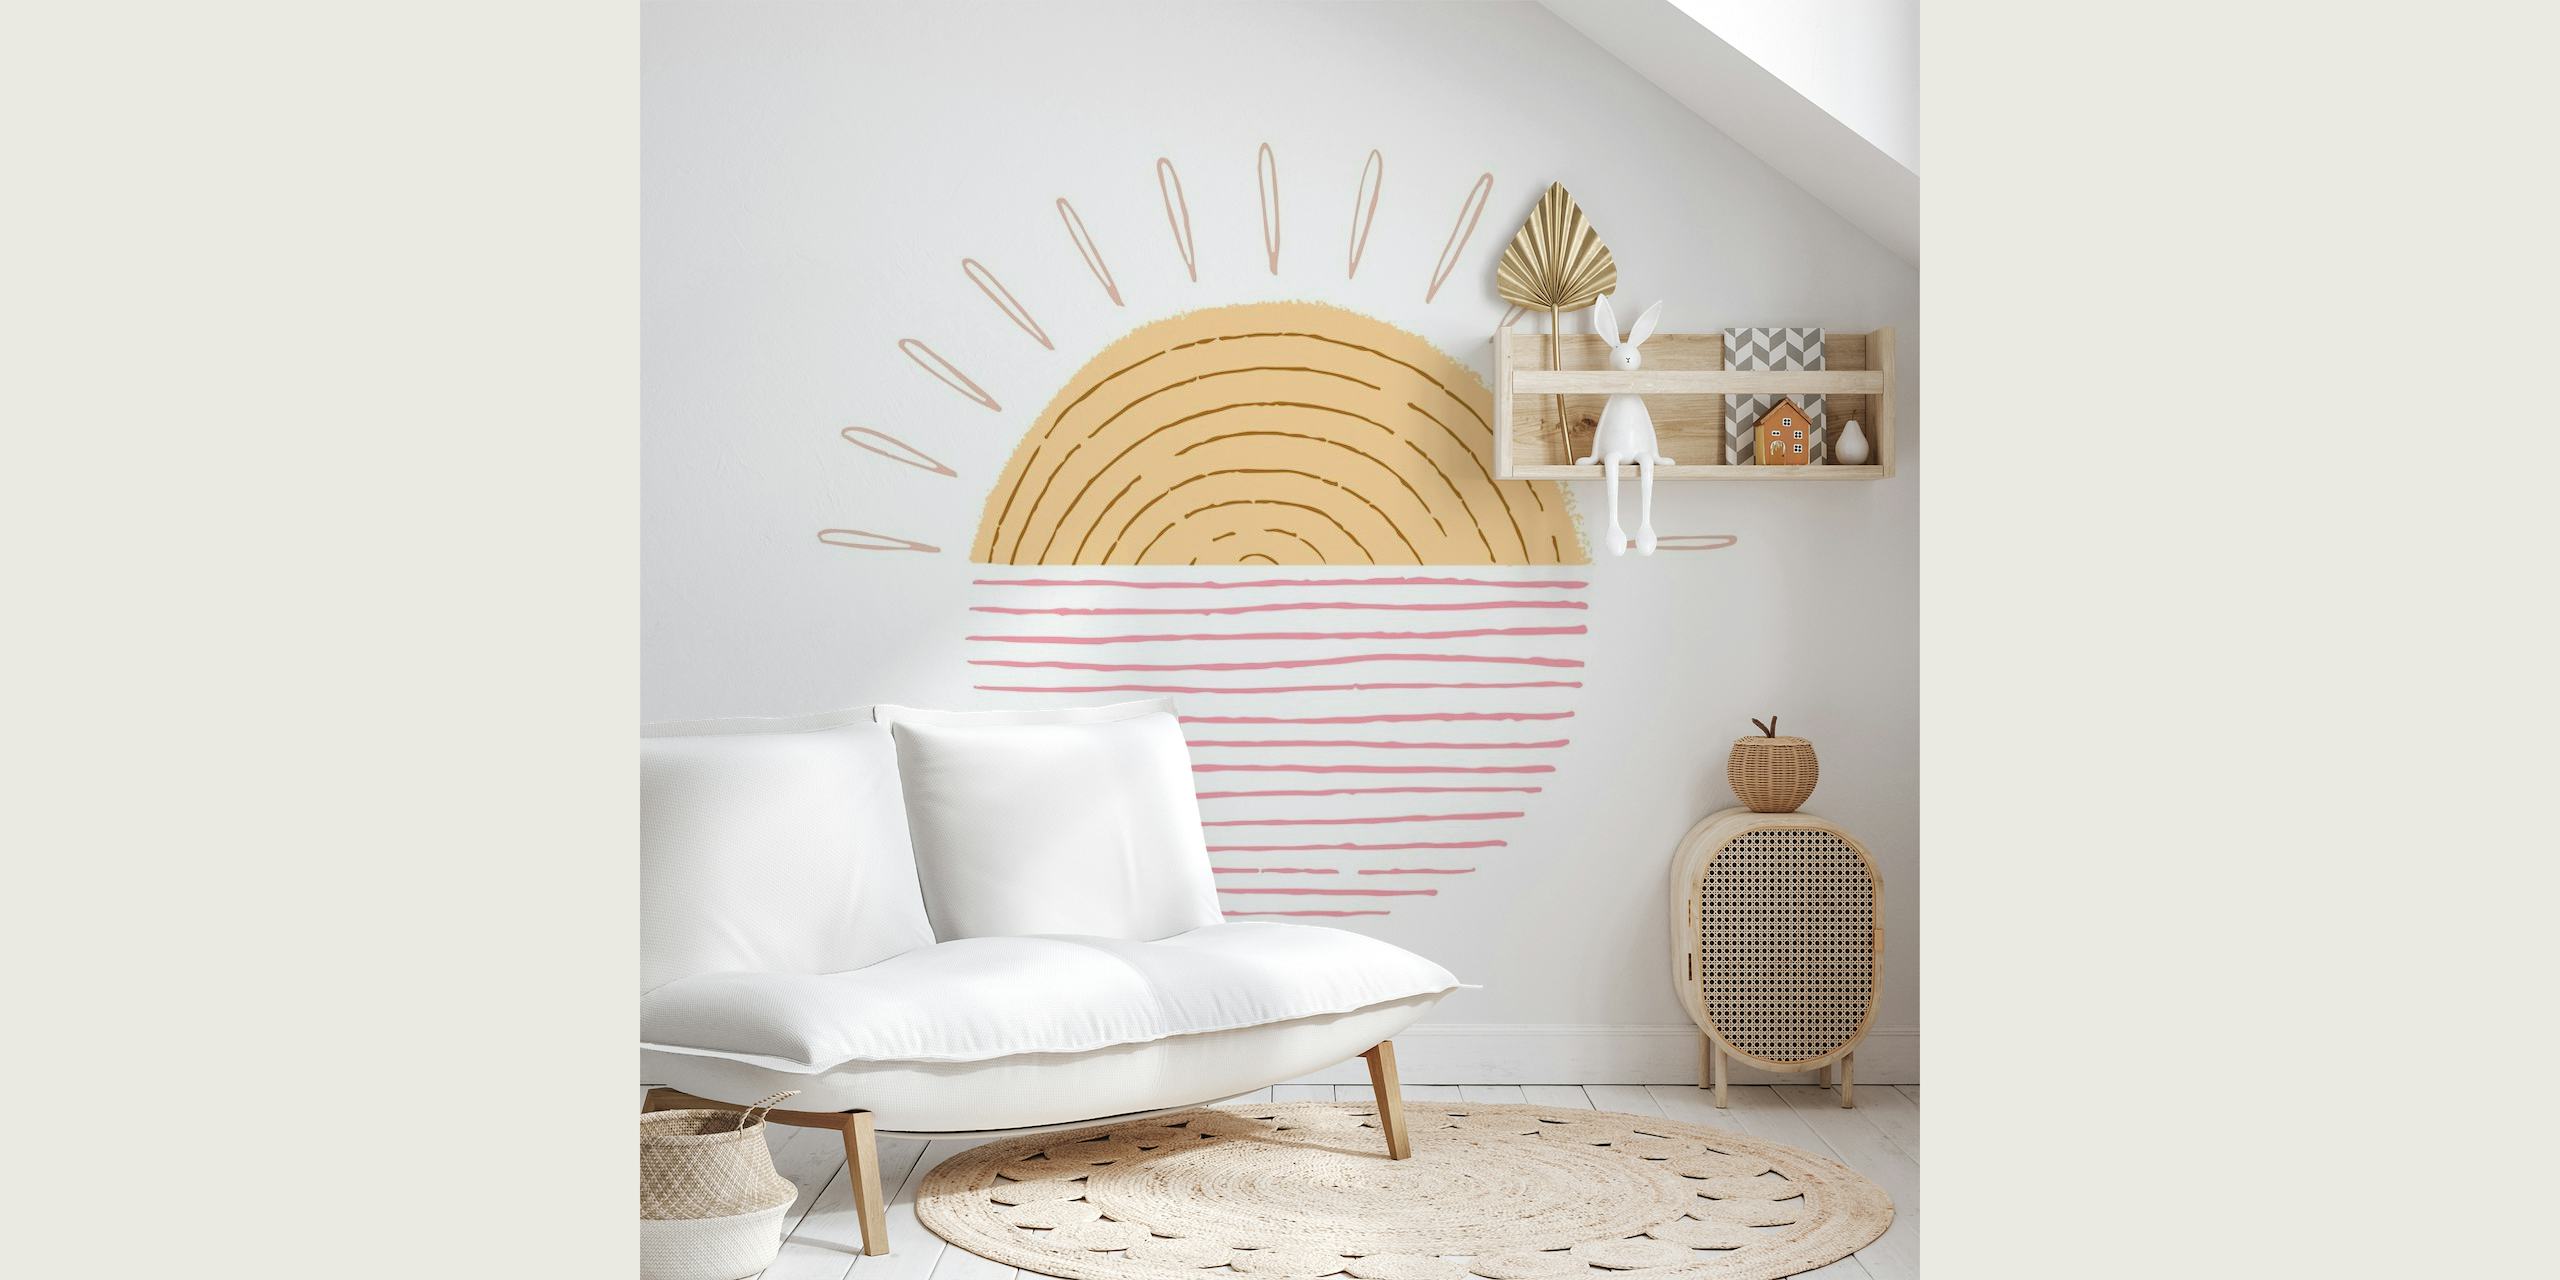 Ilustracyjna fototapeta Sweet Sunrise w ciepłych kolorach i minimalistycznym designie